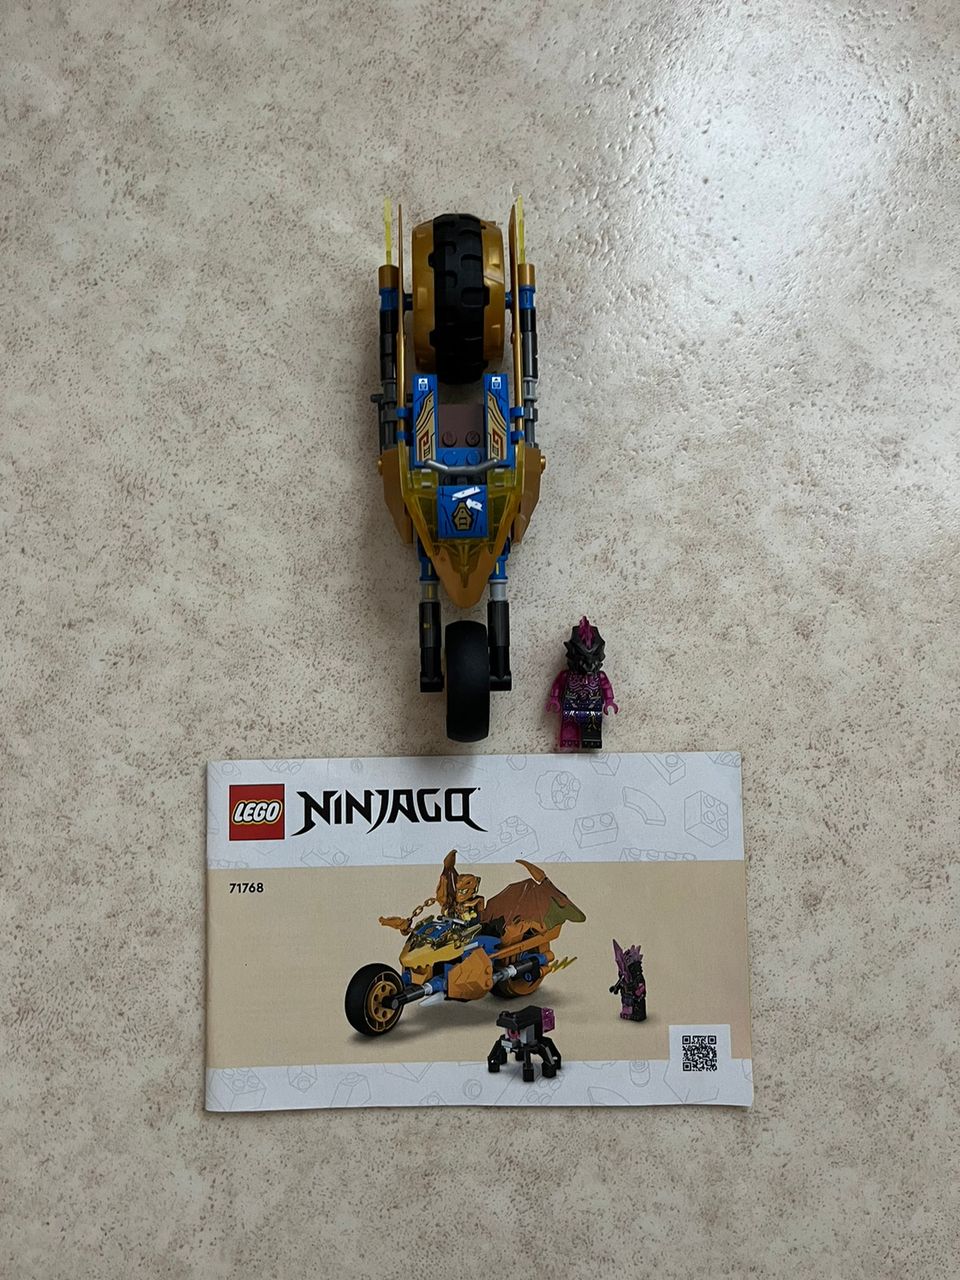 Myydän lego ninjago setti